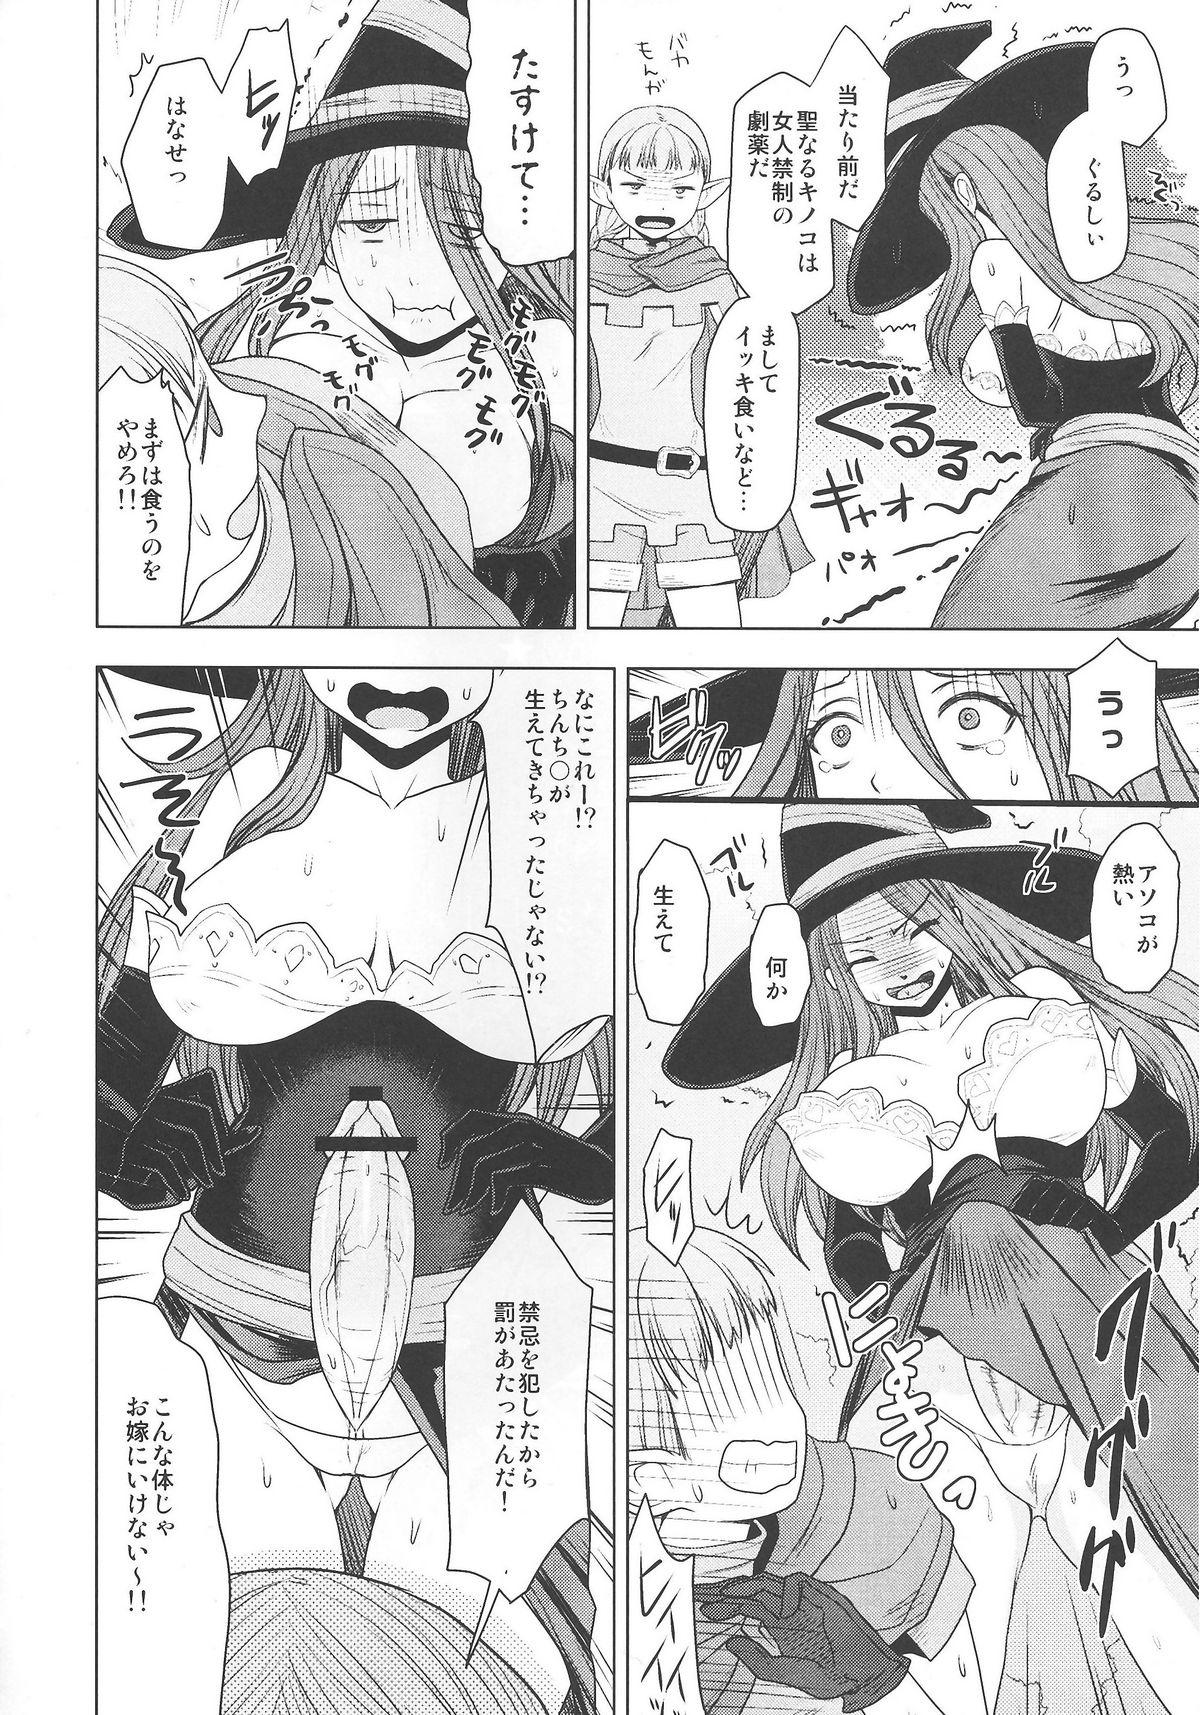 Butt Fuck Ketsu! Megaton DC - Dragons crown Woman - Page 6